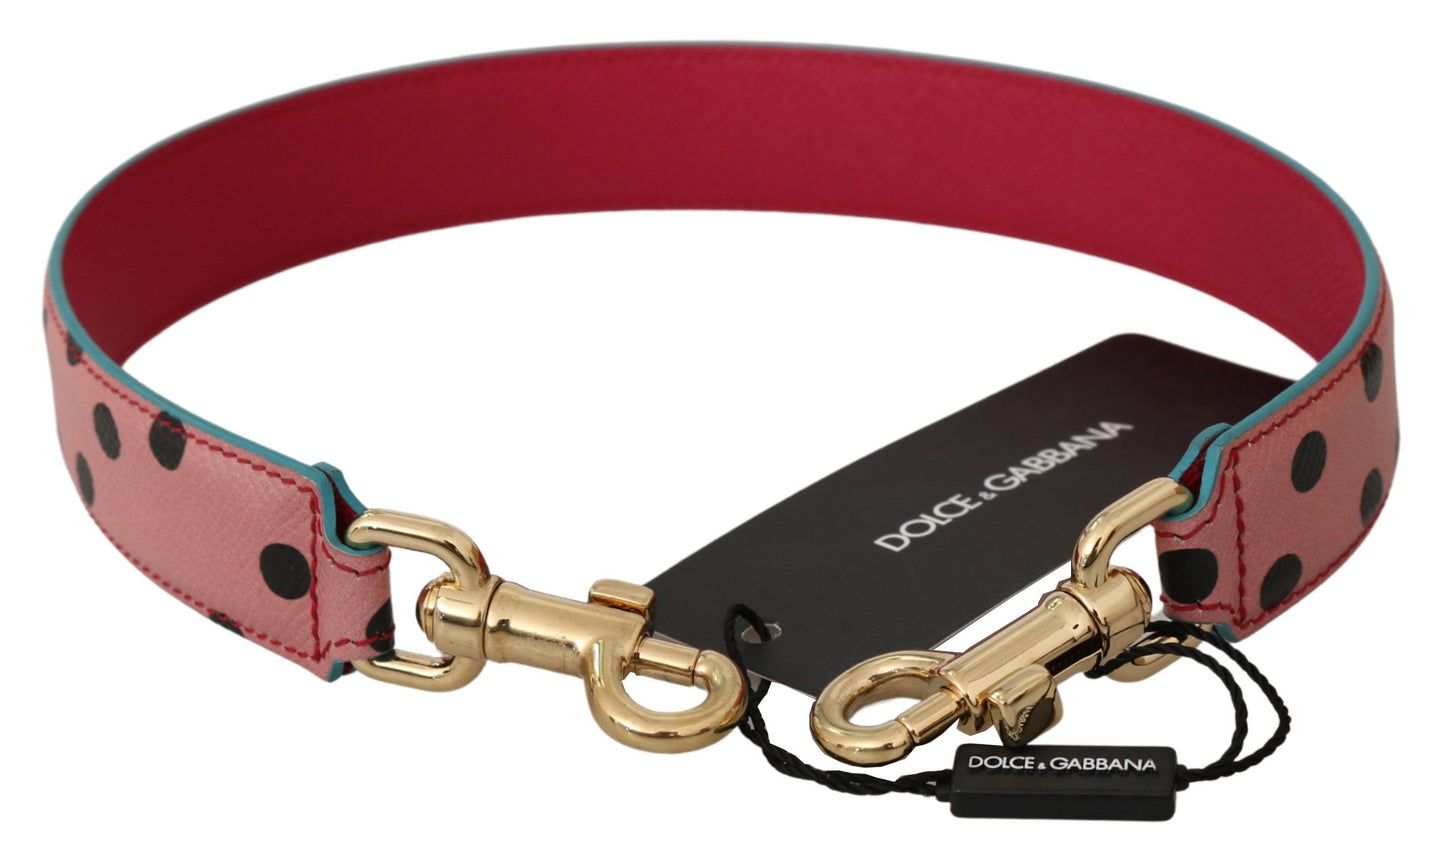 Dolce & Gabbana Elegant Pink Polka-Dotted Leather Shoulder Strap